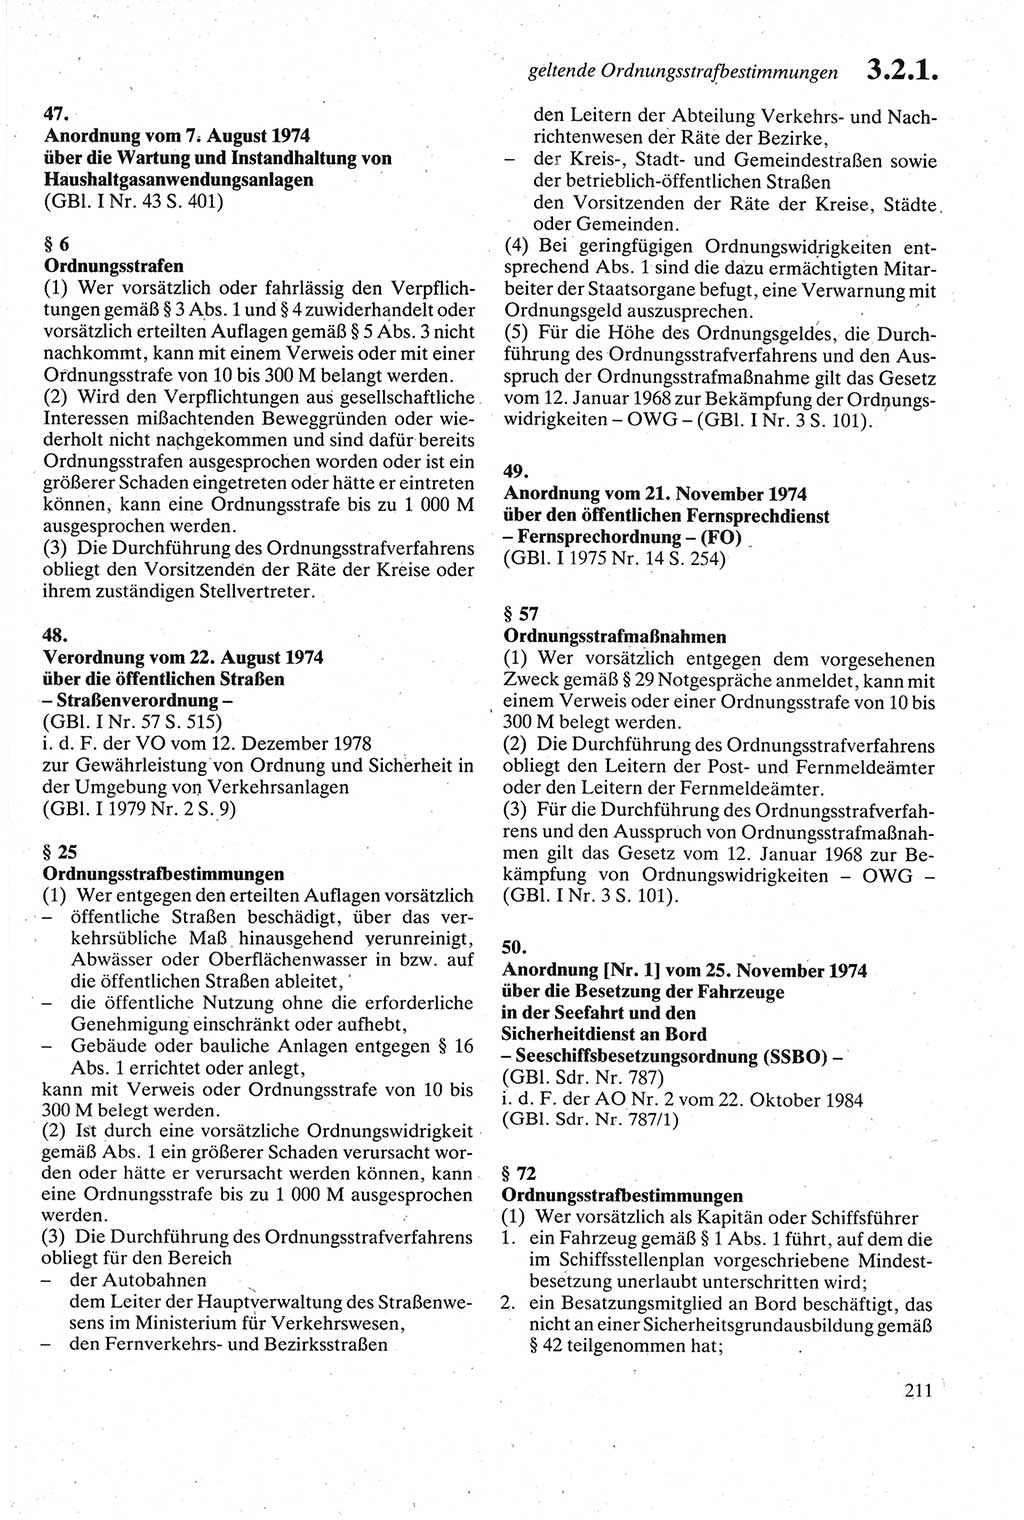 Strafgesetzbuch (StGB) der Deutschen Demokratischen Republik (DDR) sowie angrenzende Gesetze und Bestimmungen 1979, Seite 211 (StGB DDR Ges. Best. 1979, S. 211)